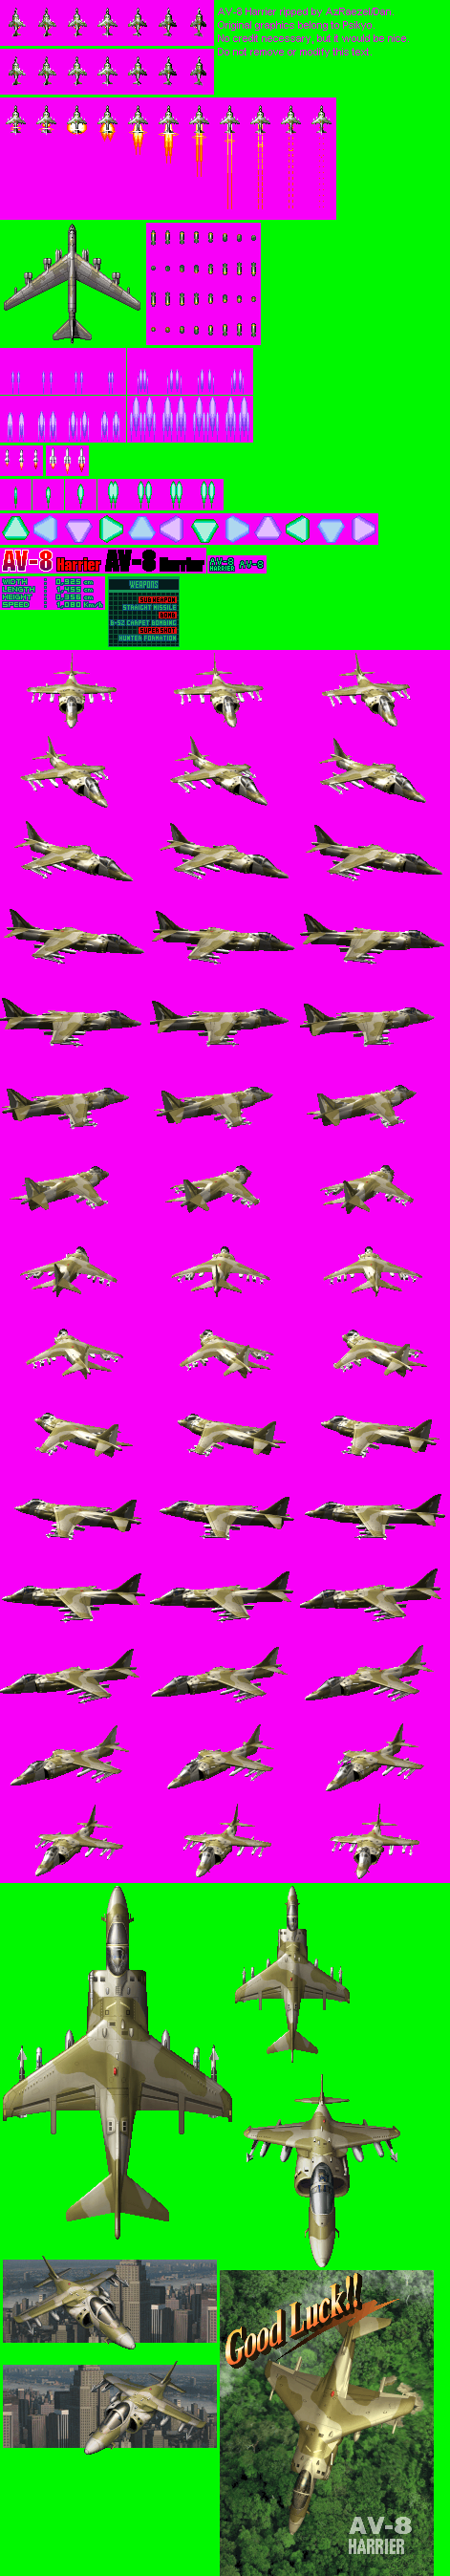 Strikers 1945 3 / Strikers 1999 - AV-8 Harrier